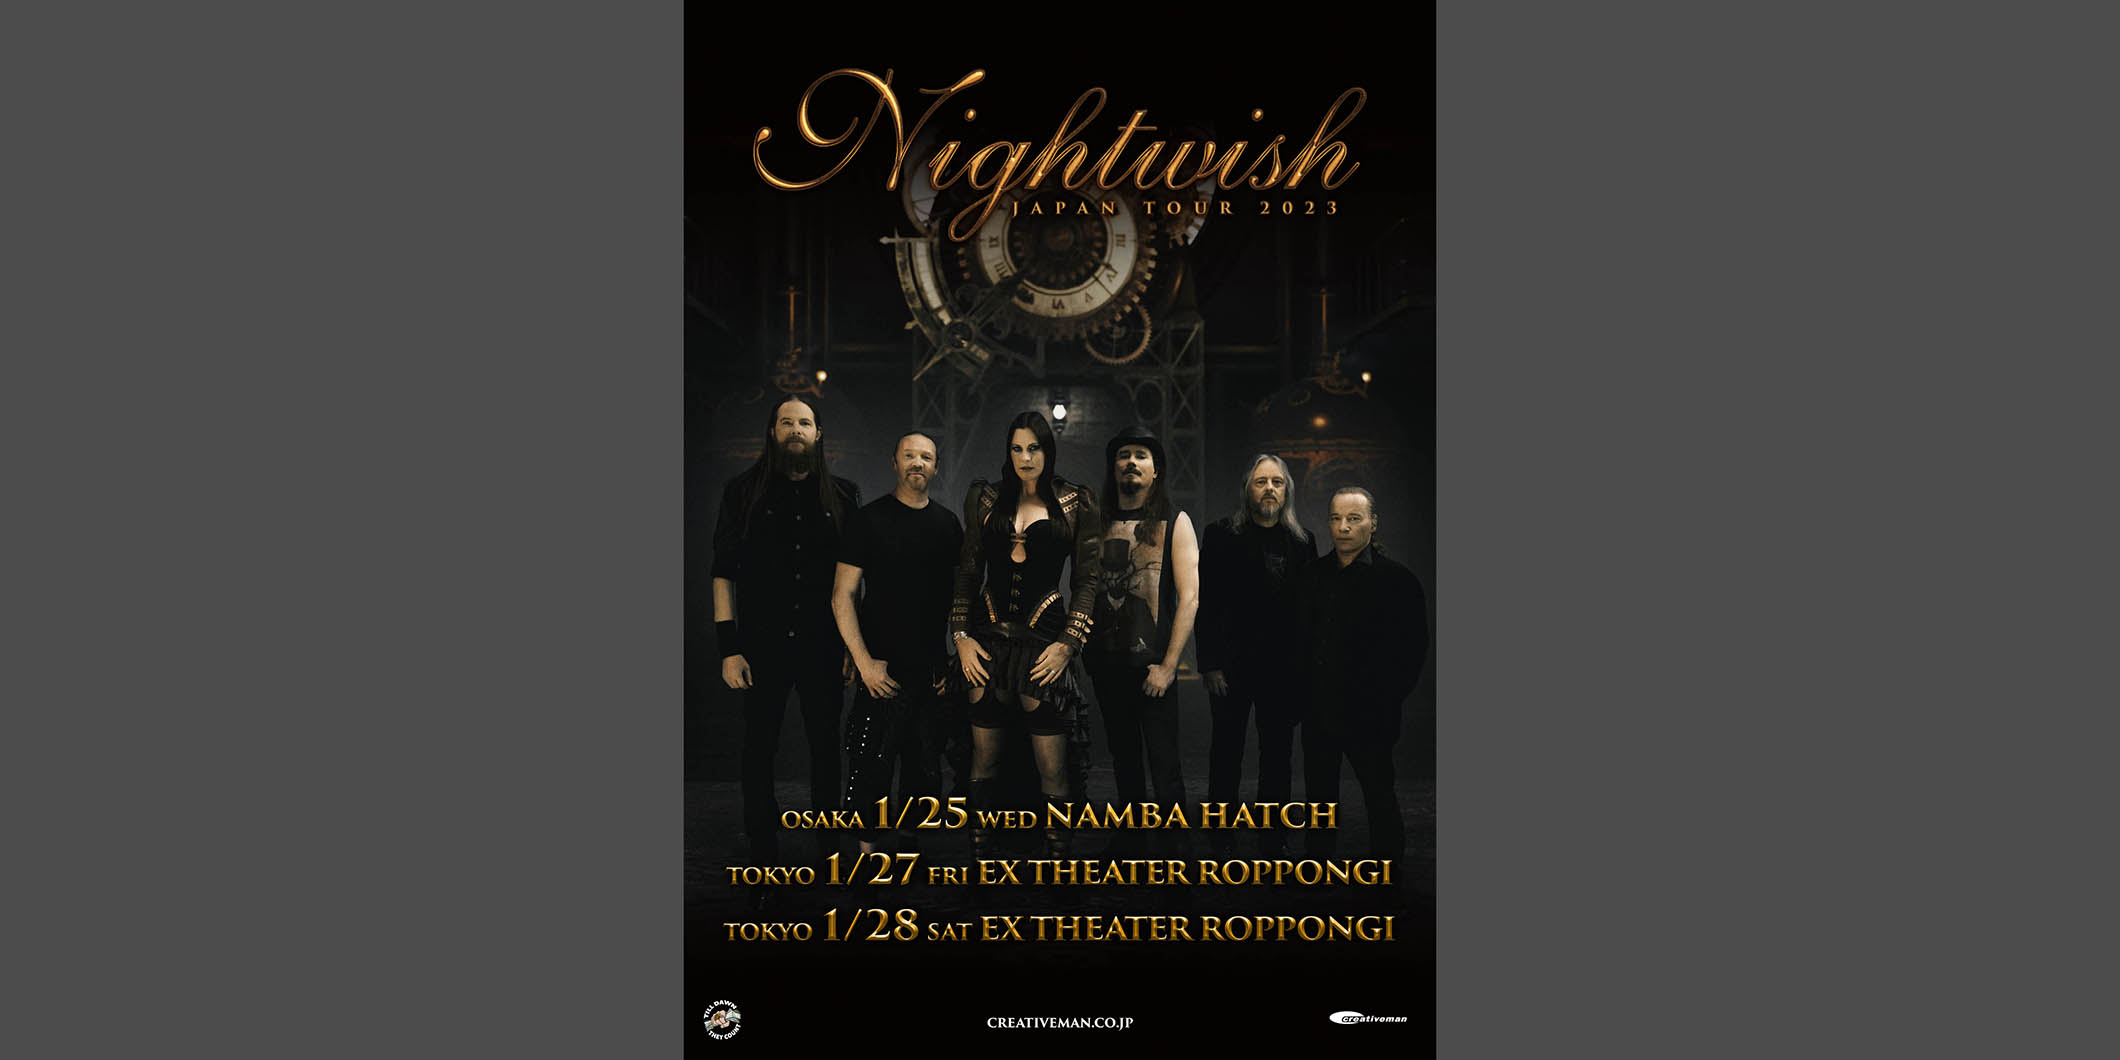 NIGHTWISHが2023年1月に6年ぶりの来日公演フィンランドの国民的メタル・バンド襲来！